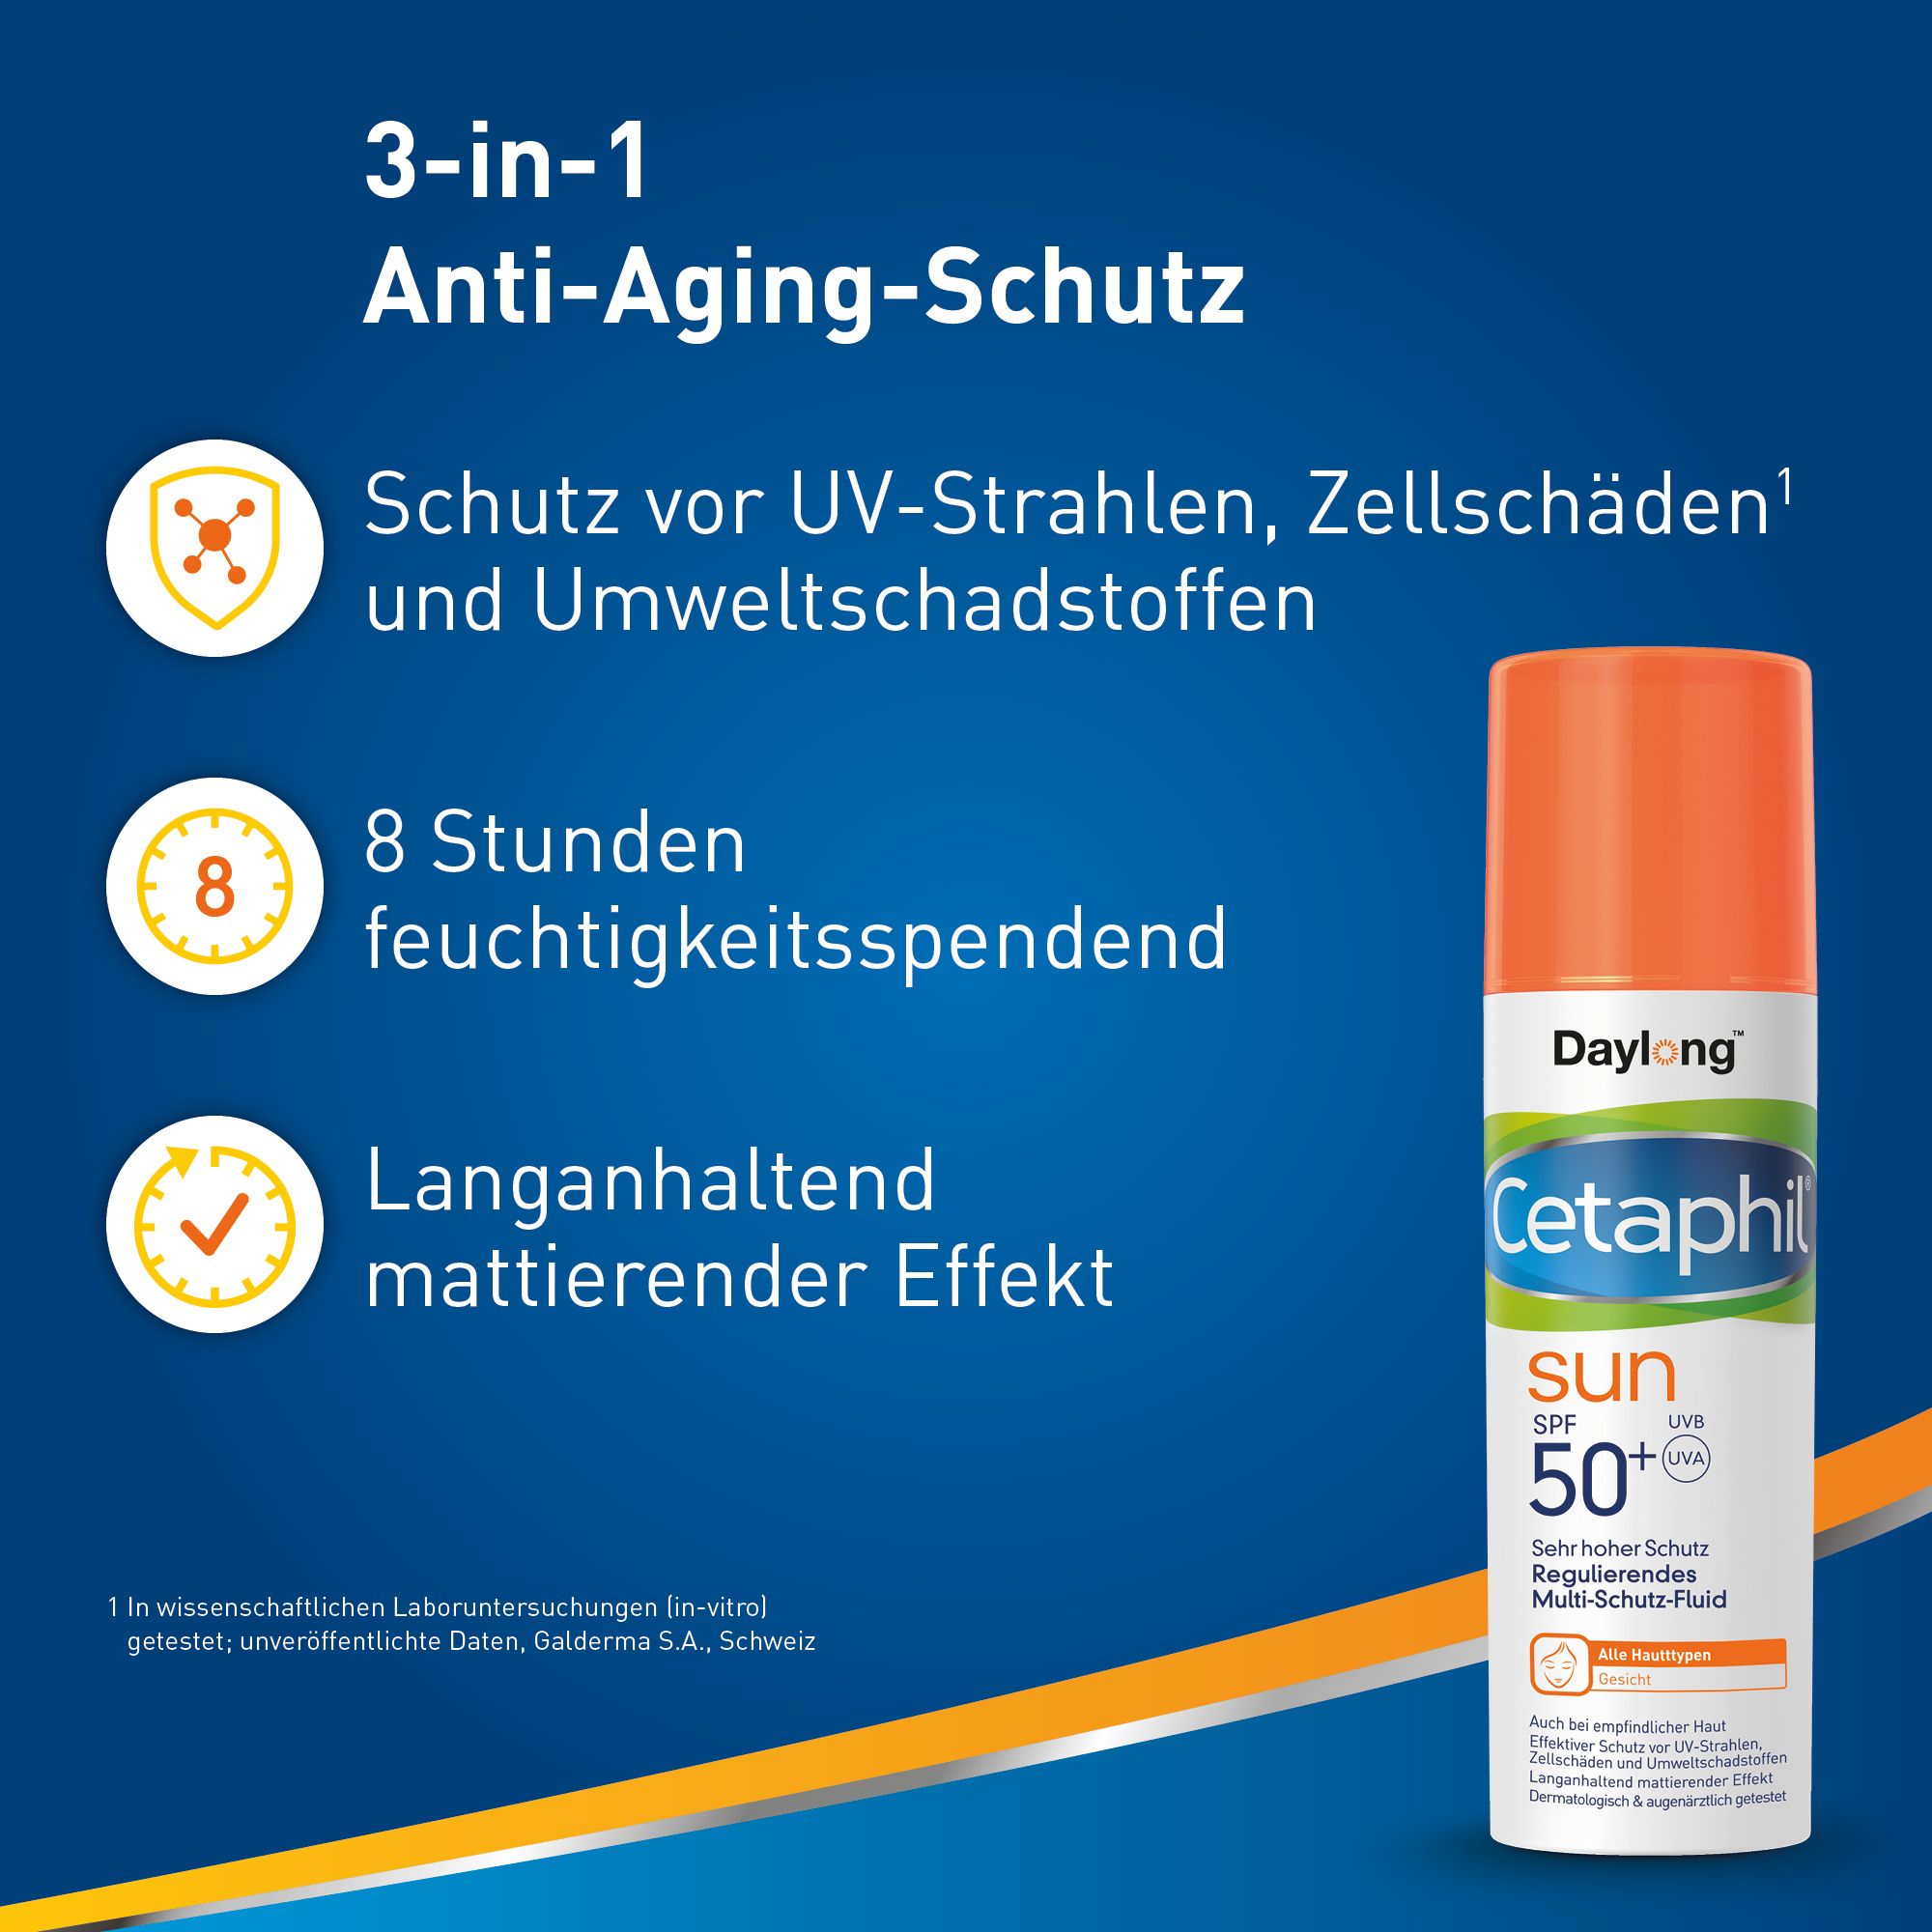 CETAPHIL SUN Regulierendes Multi-Schutz-Fluid SPF 50+ Anti-Aging-Sonnenschutz